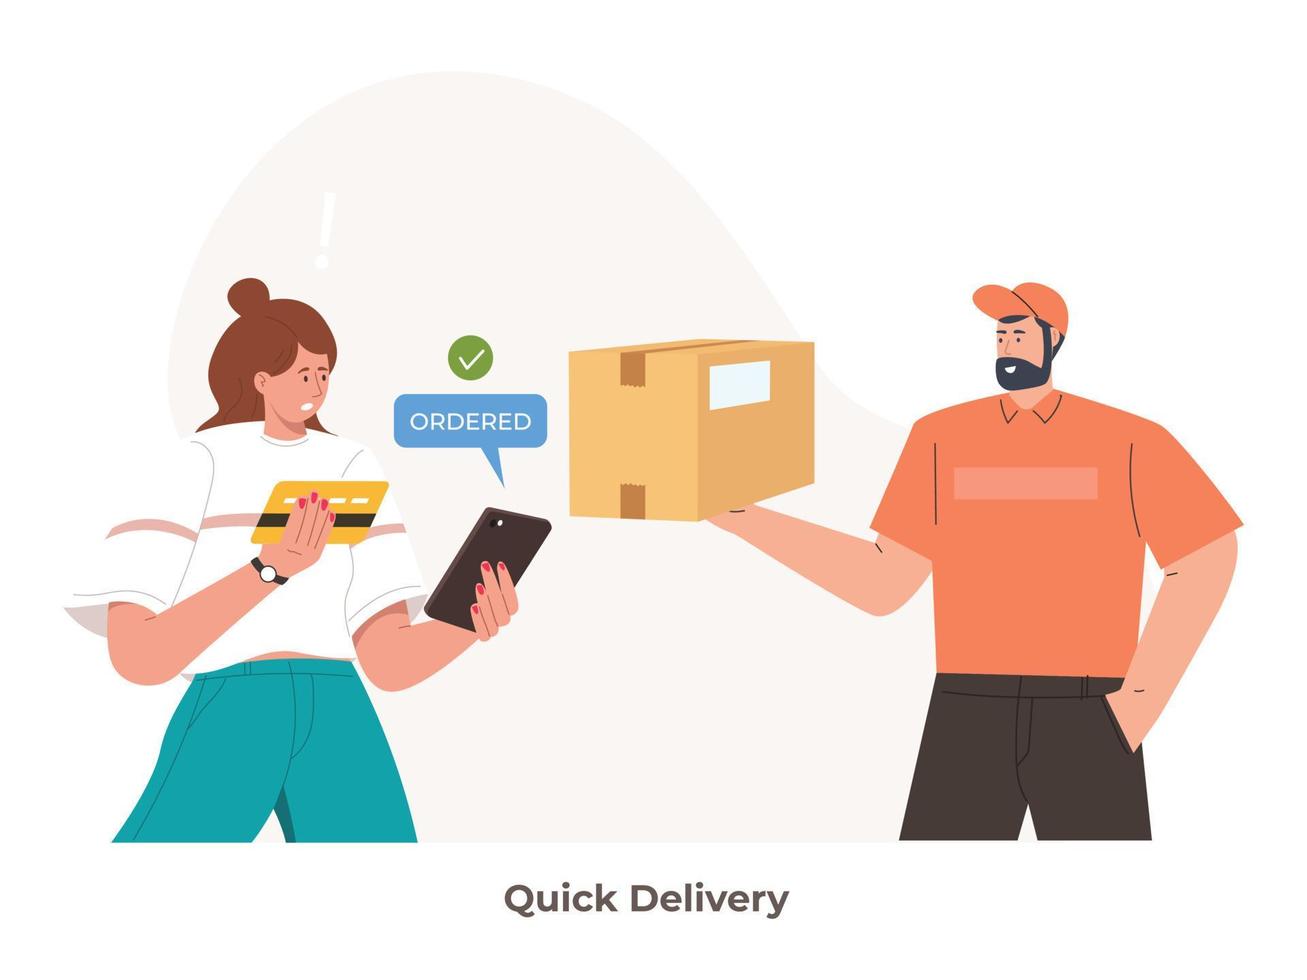 una persona entrega rápidamente un paquete o una pizza. entrega urgente de alimentos y compras en línea. concepto de entrega rápida vector